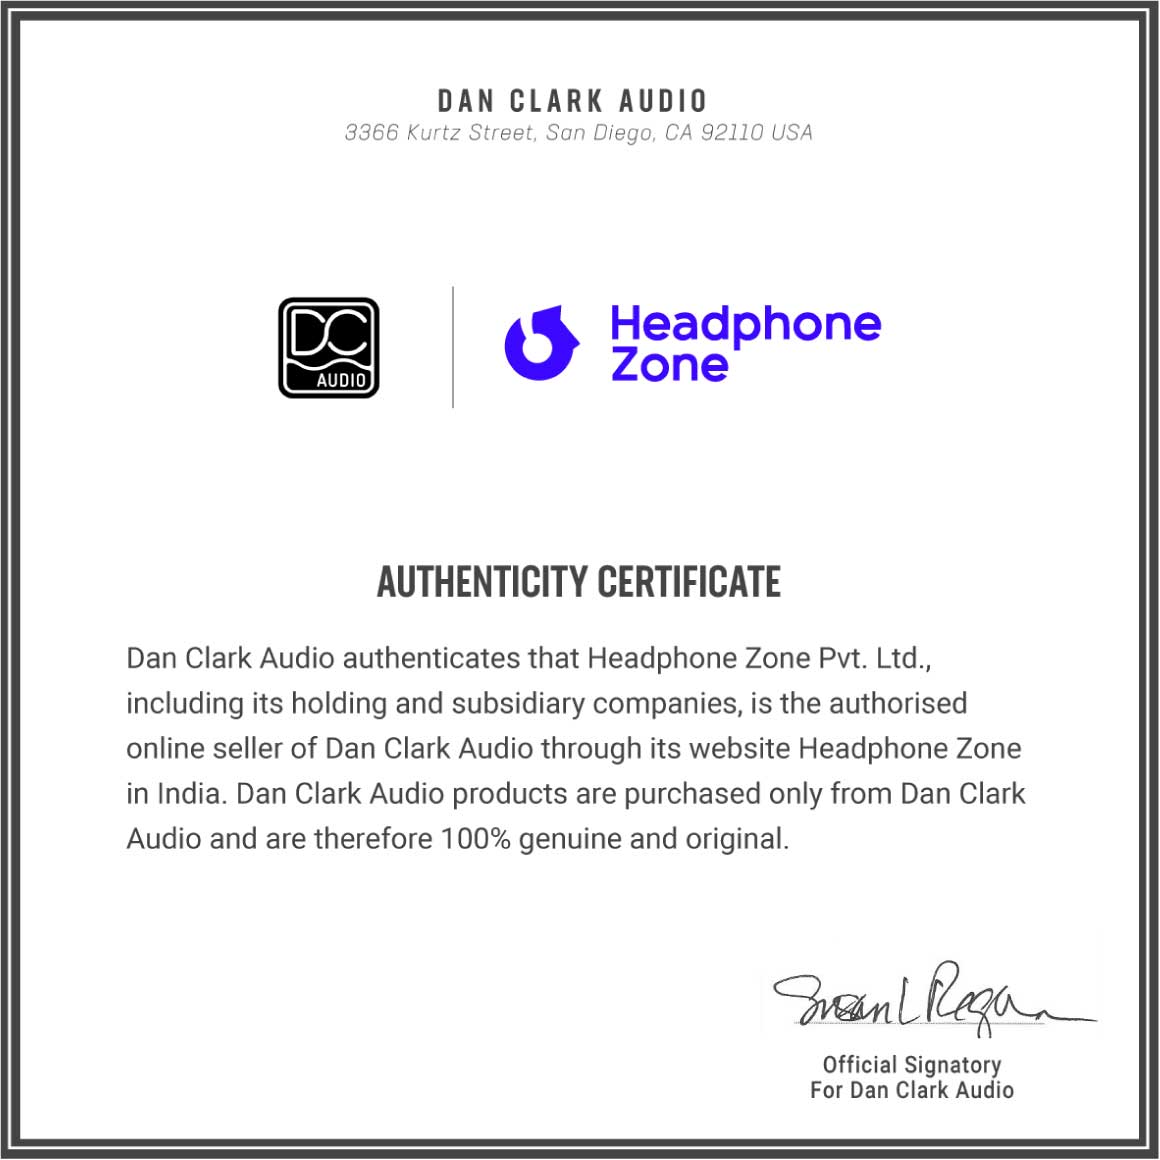 Headphoen-Zone-Dan Clark Audio-Authenticity-Certificate